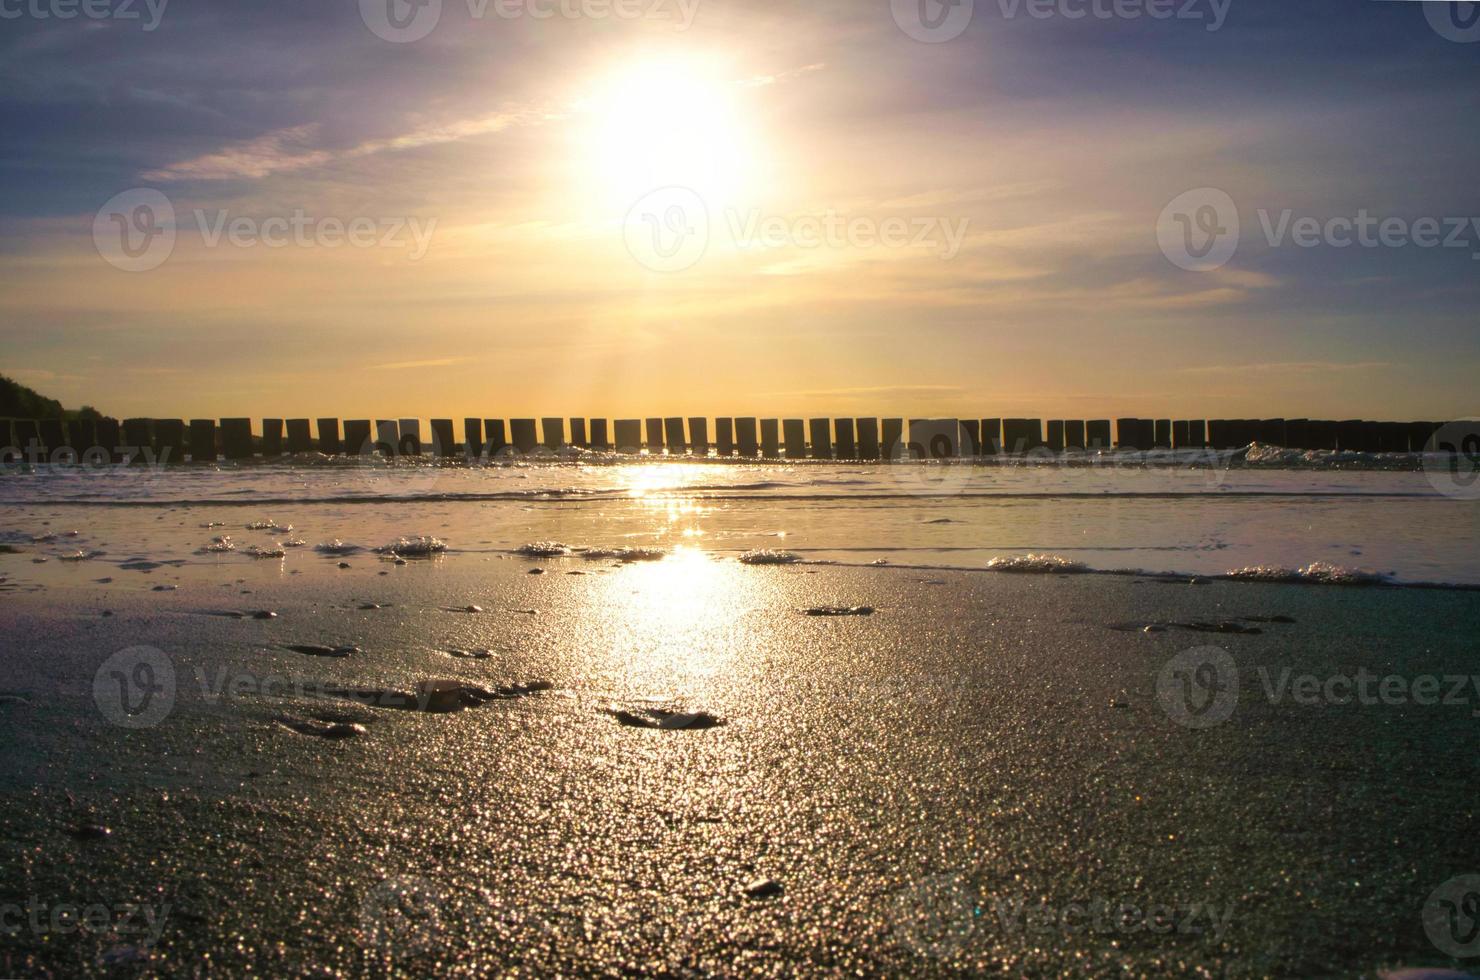 les épis s'avancent dans la mer au coucher du soleil. le soleil brille sur la mer baltique. paysage photo